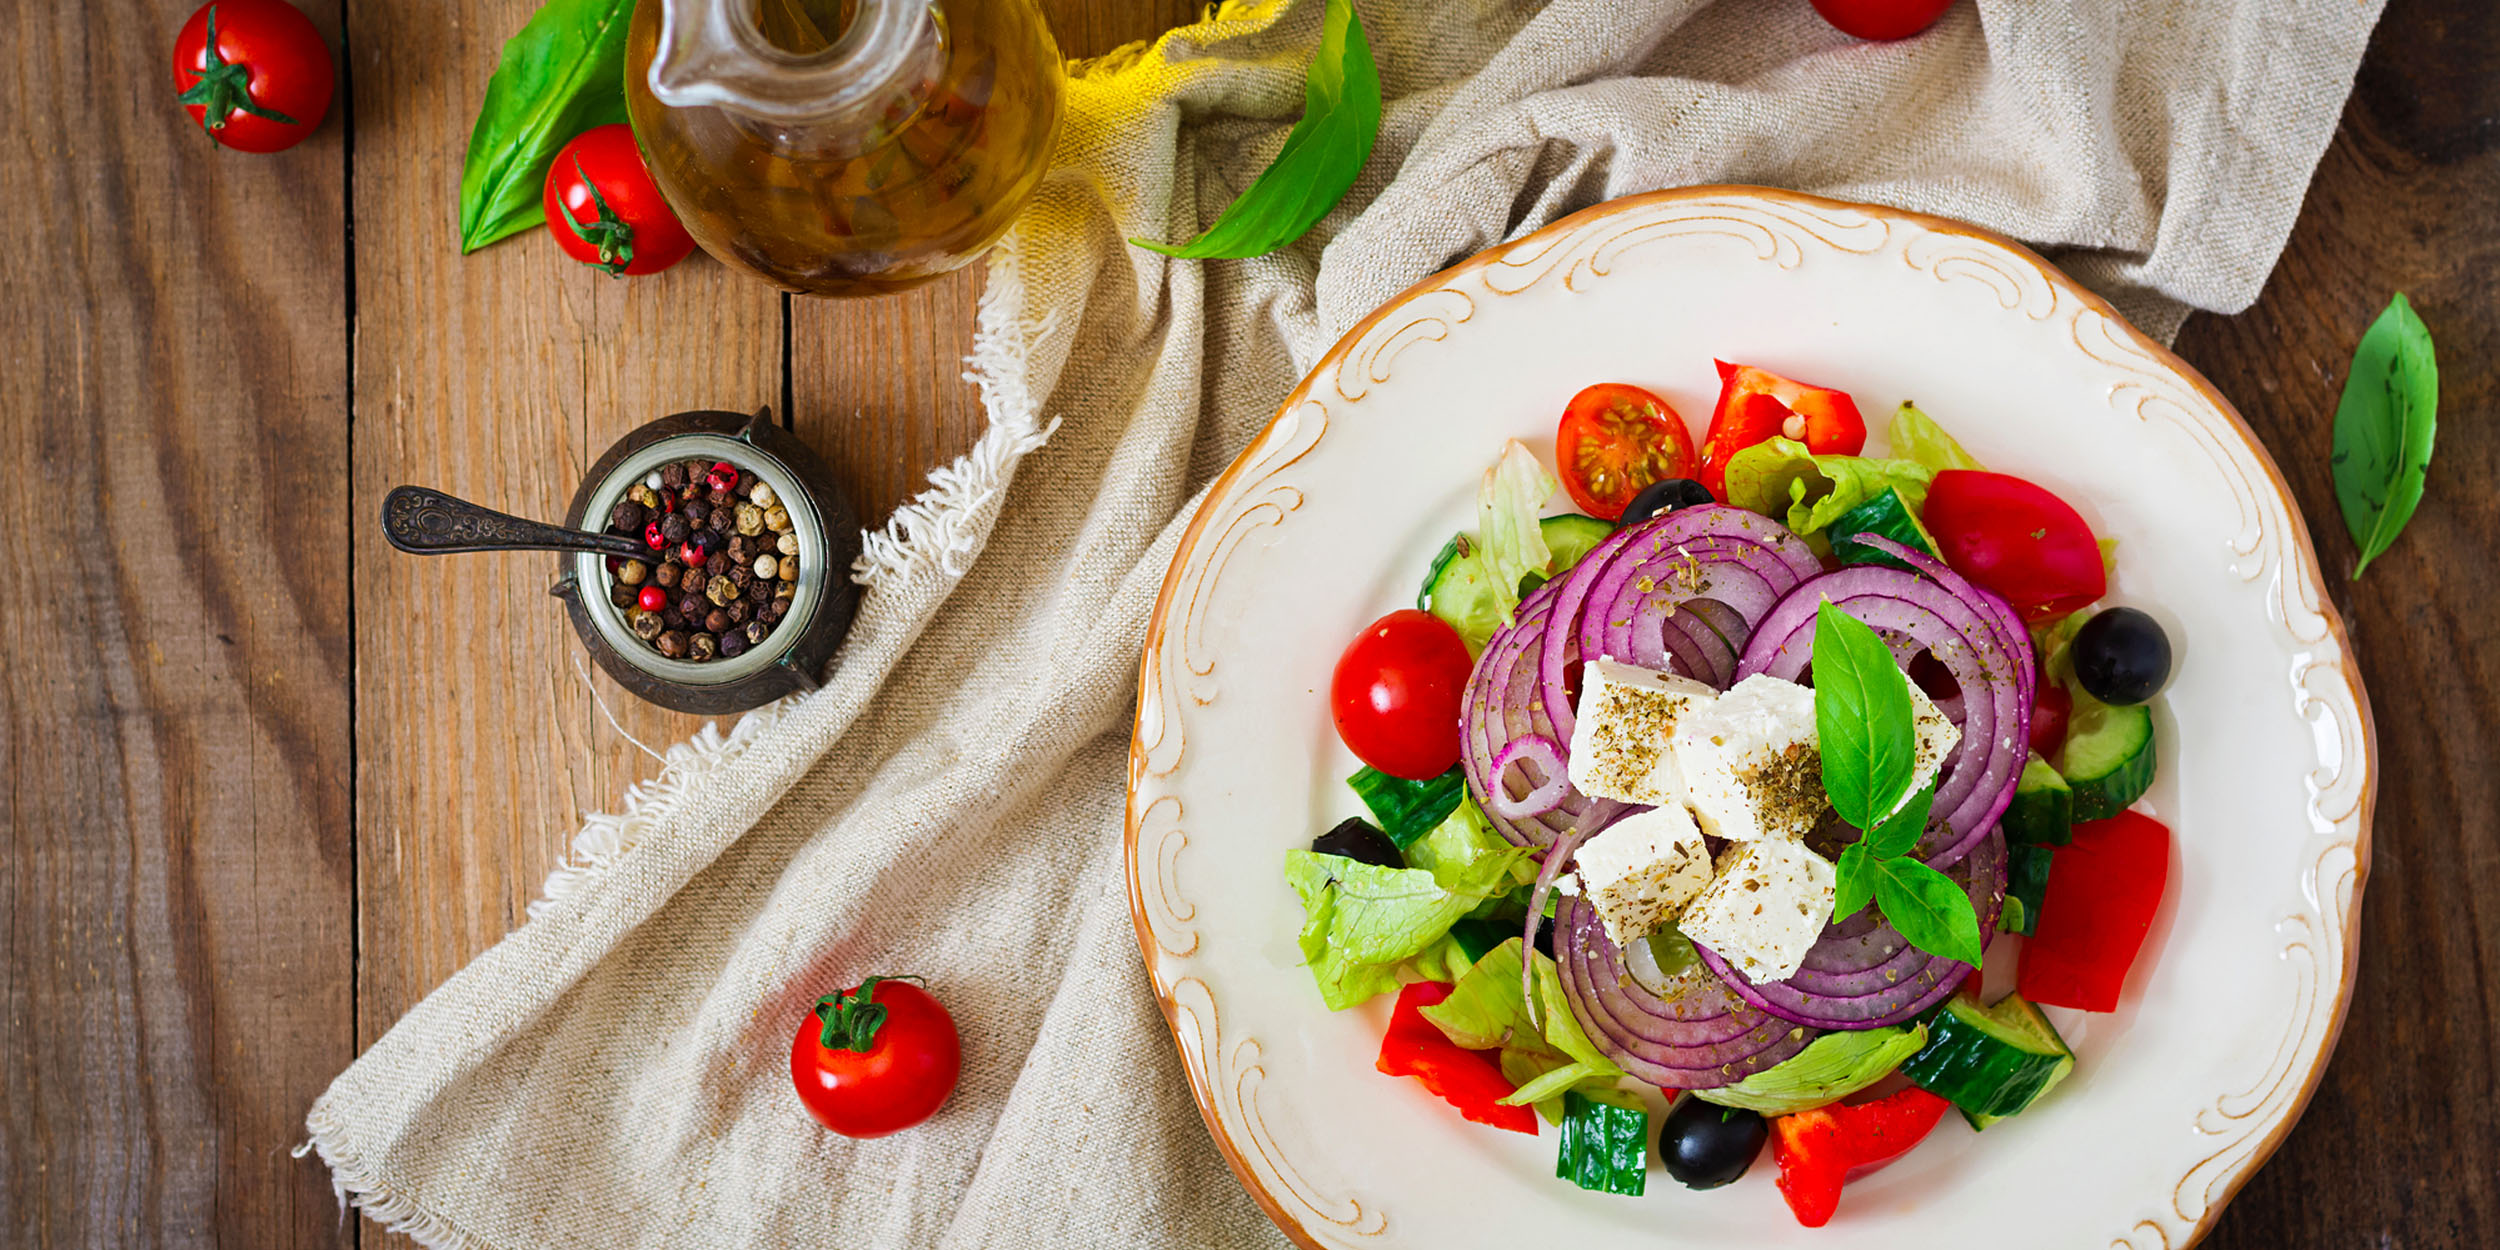 Греческий салат классический пошаговый рецепт с фото